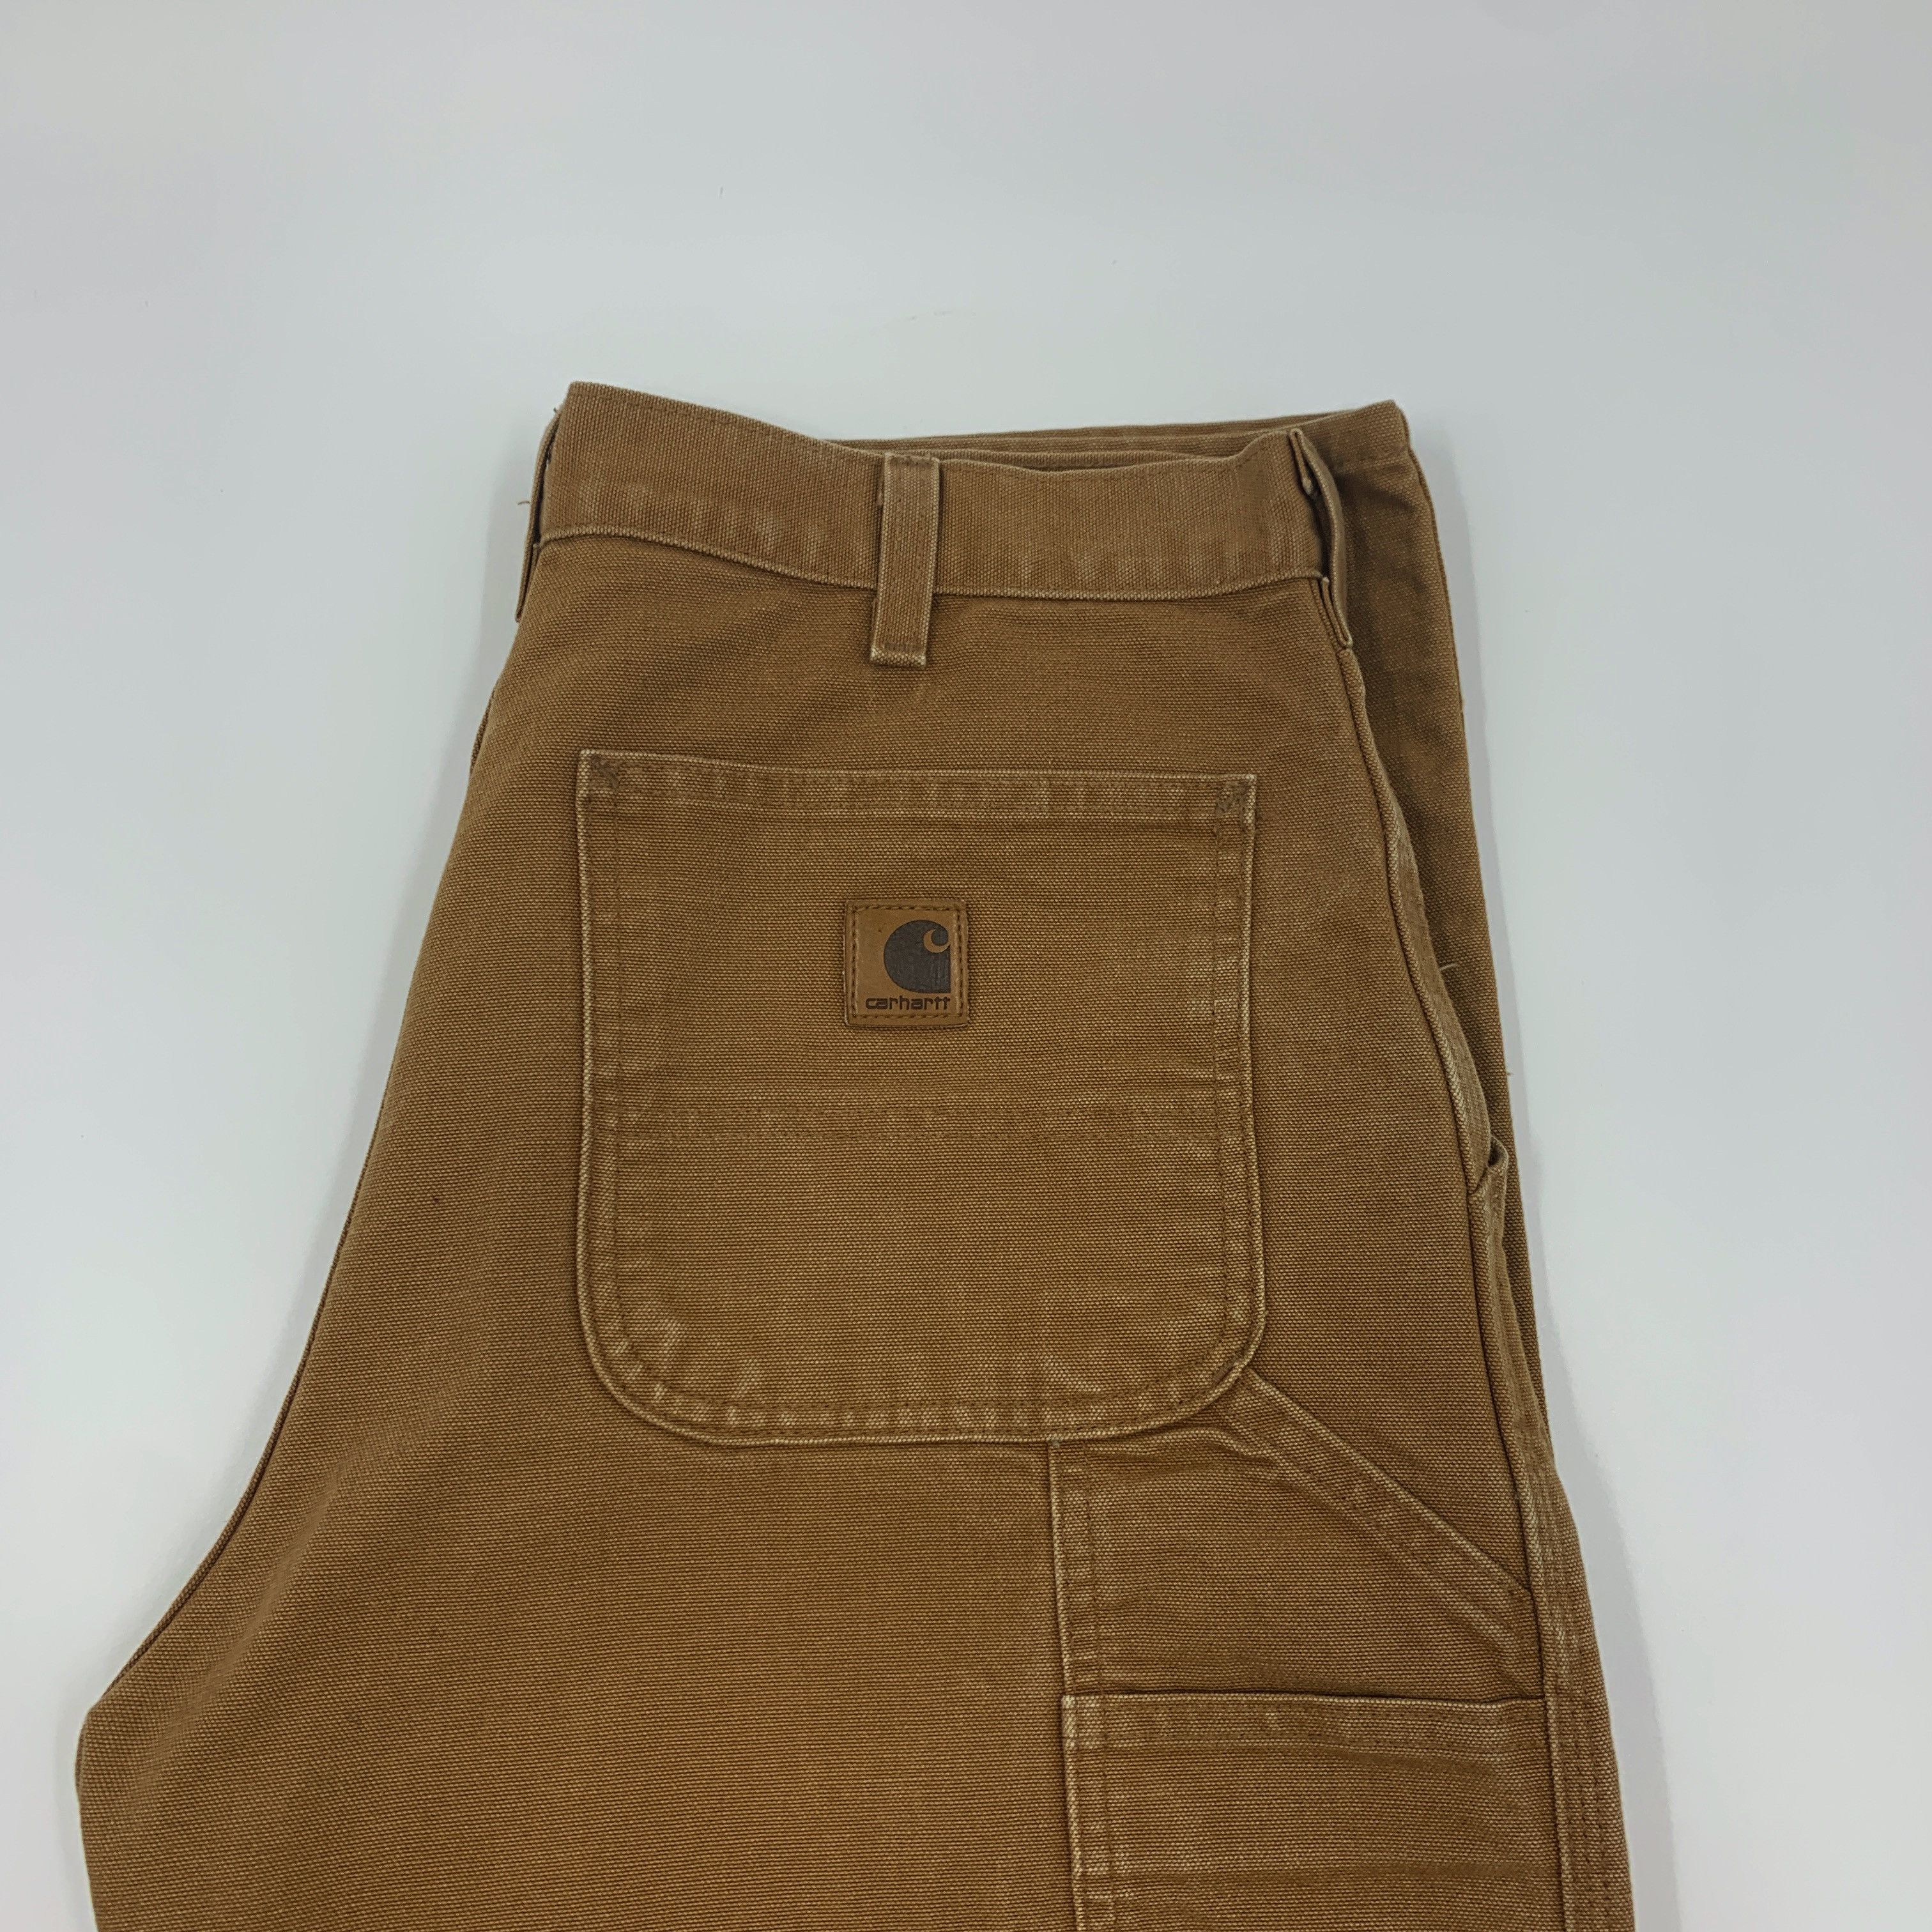 Vintage Carhartt B11 BRN pants size 33x34 Size US 33 - 5 Thumbnail